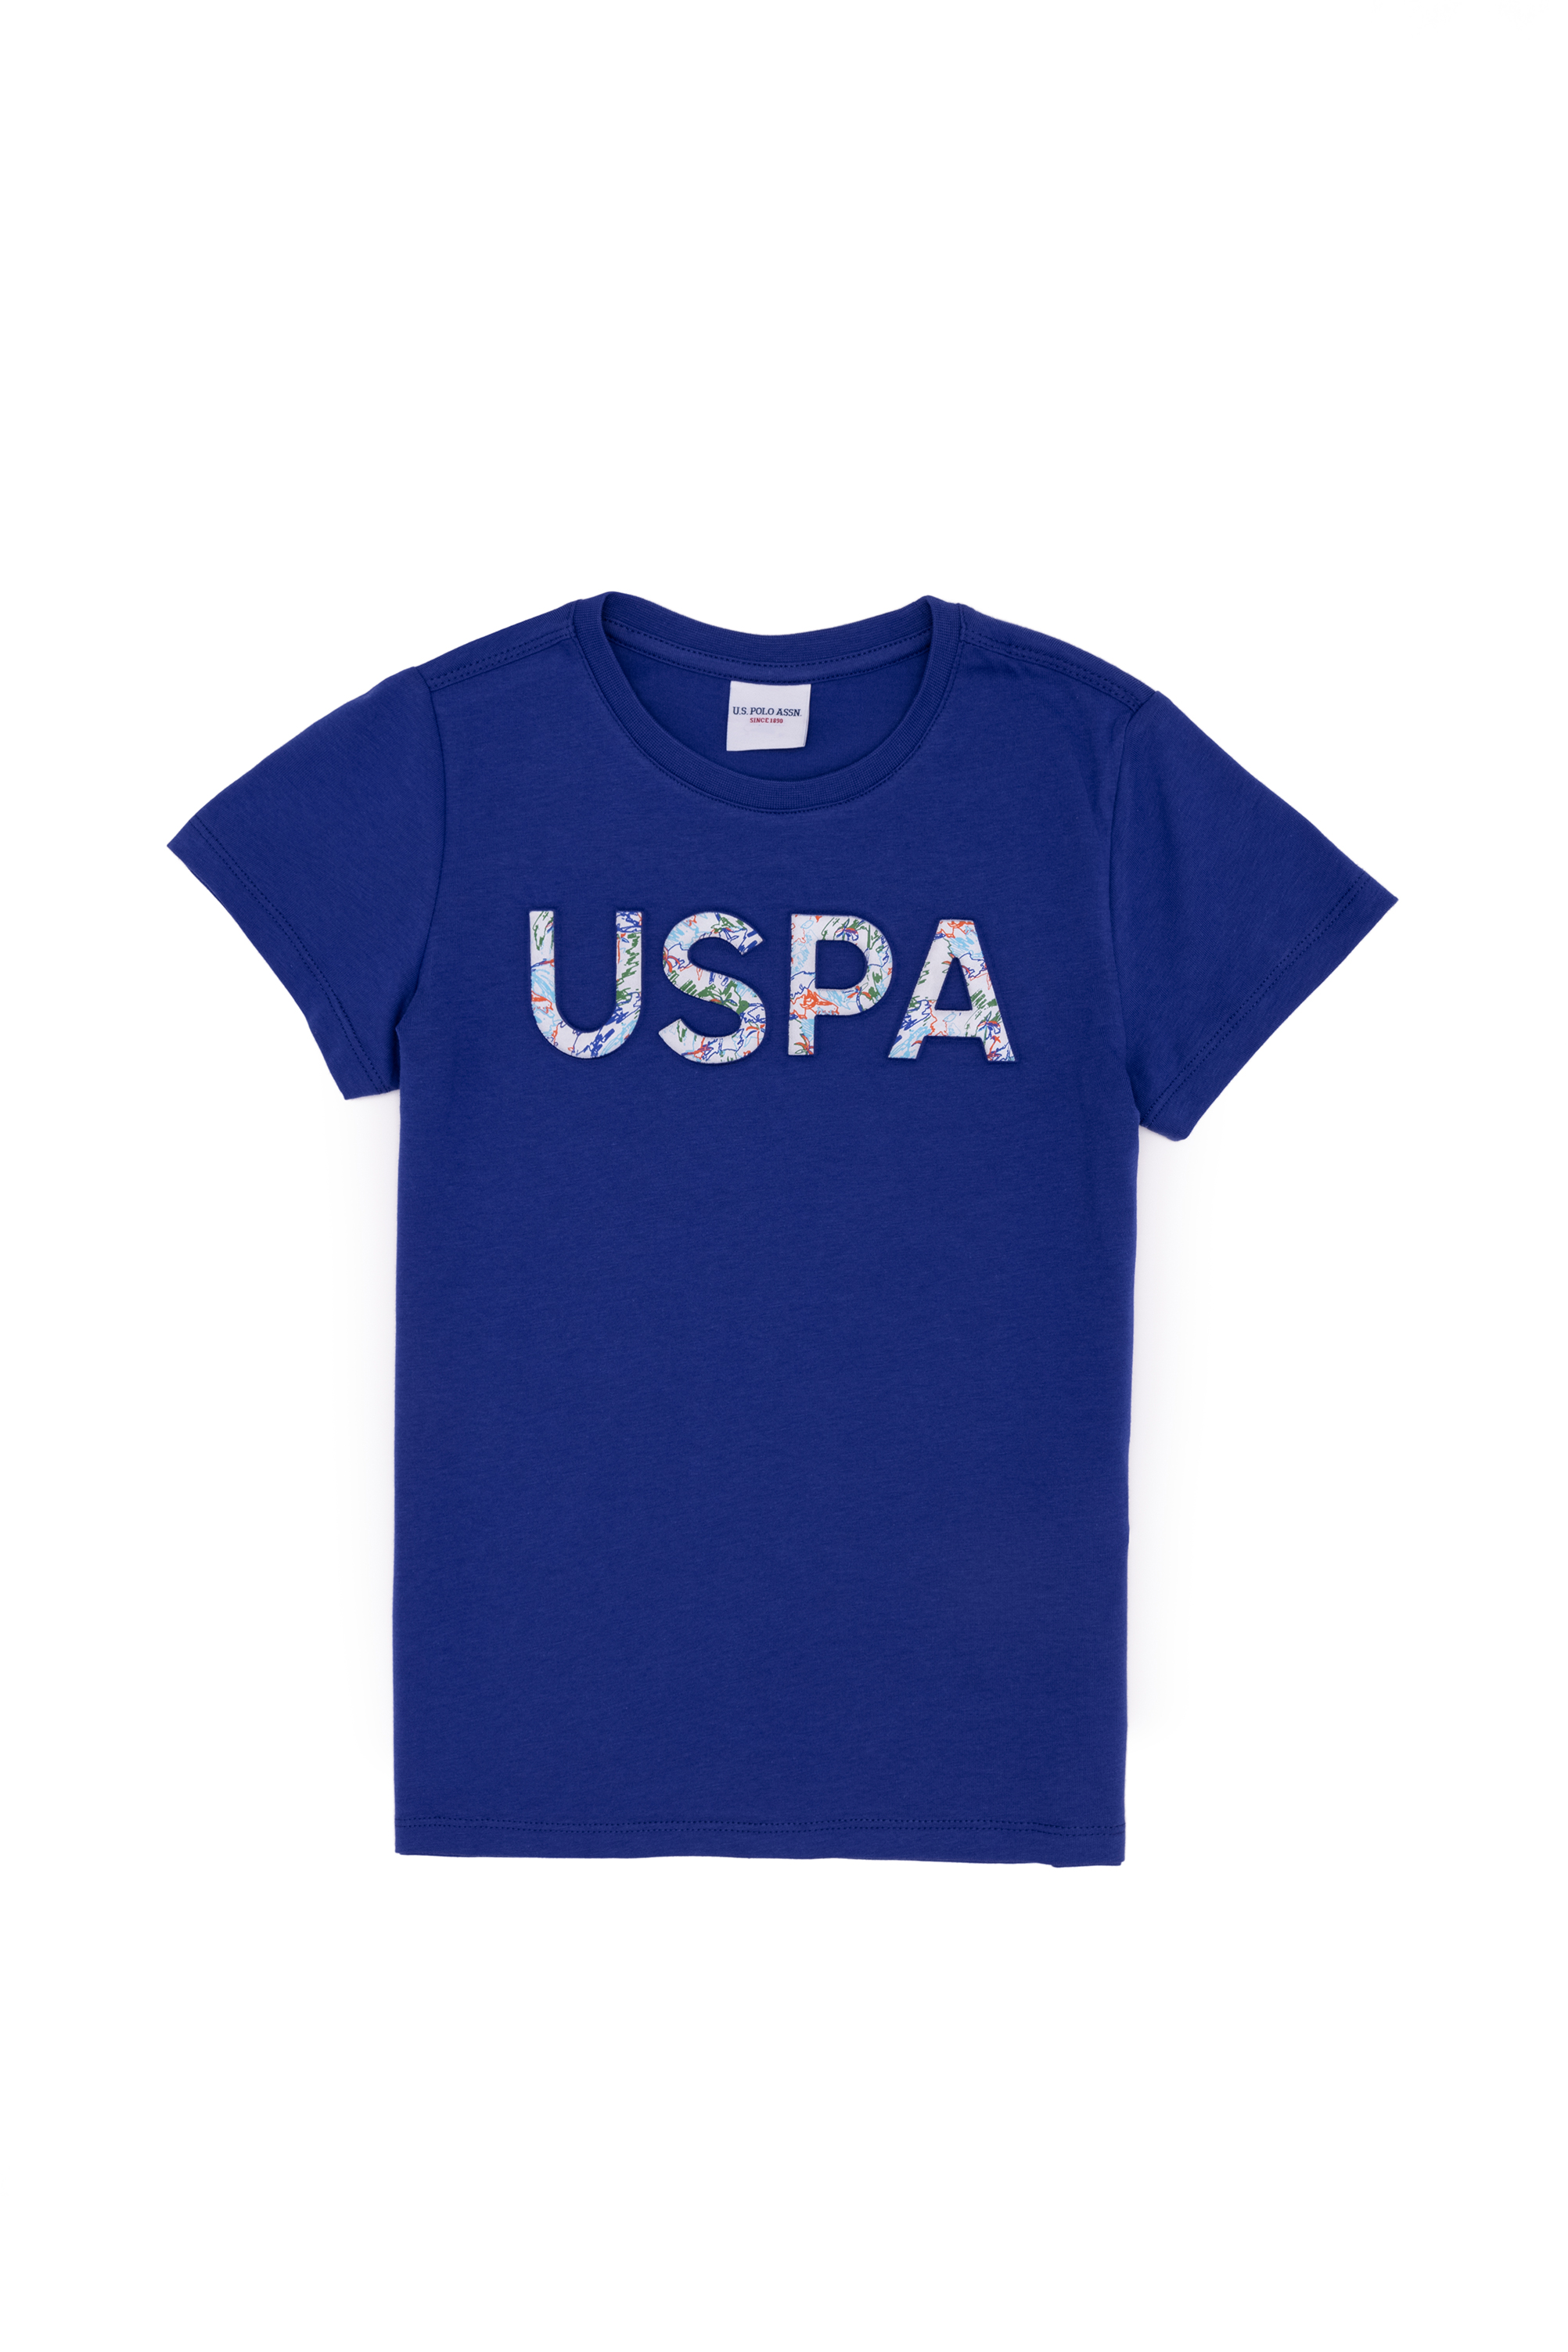 Детская футболка US Polo Assn G083SZ0110LONG, цвет кобальтовый, размер 122.